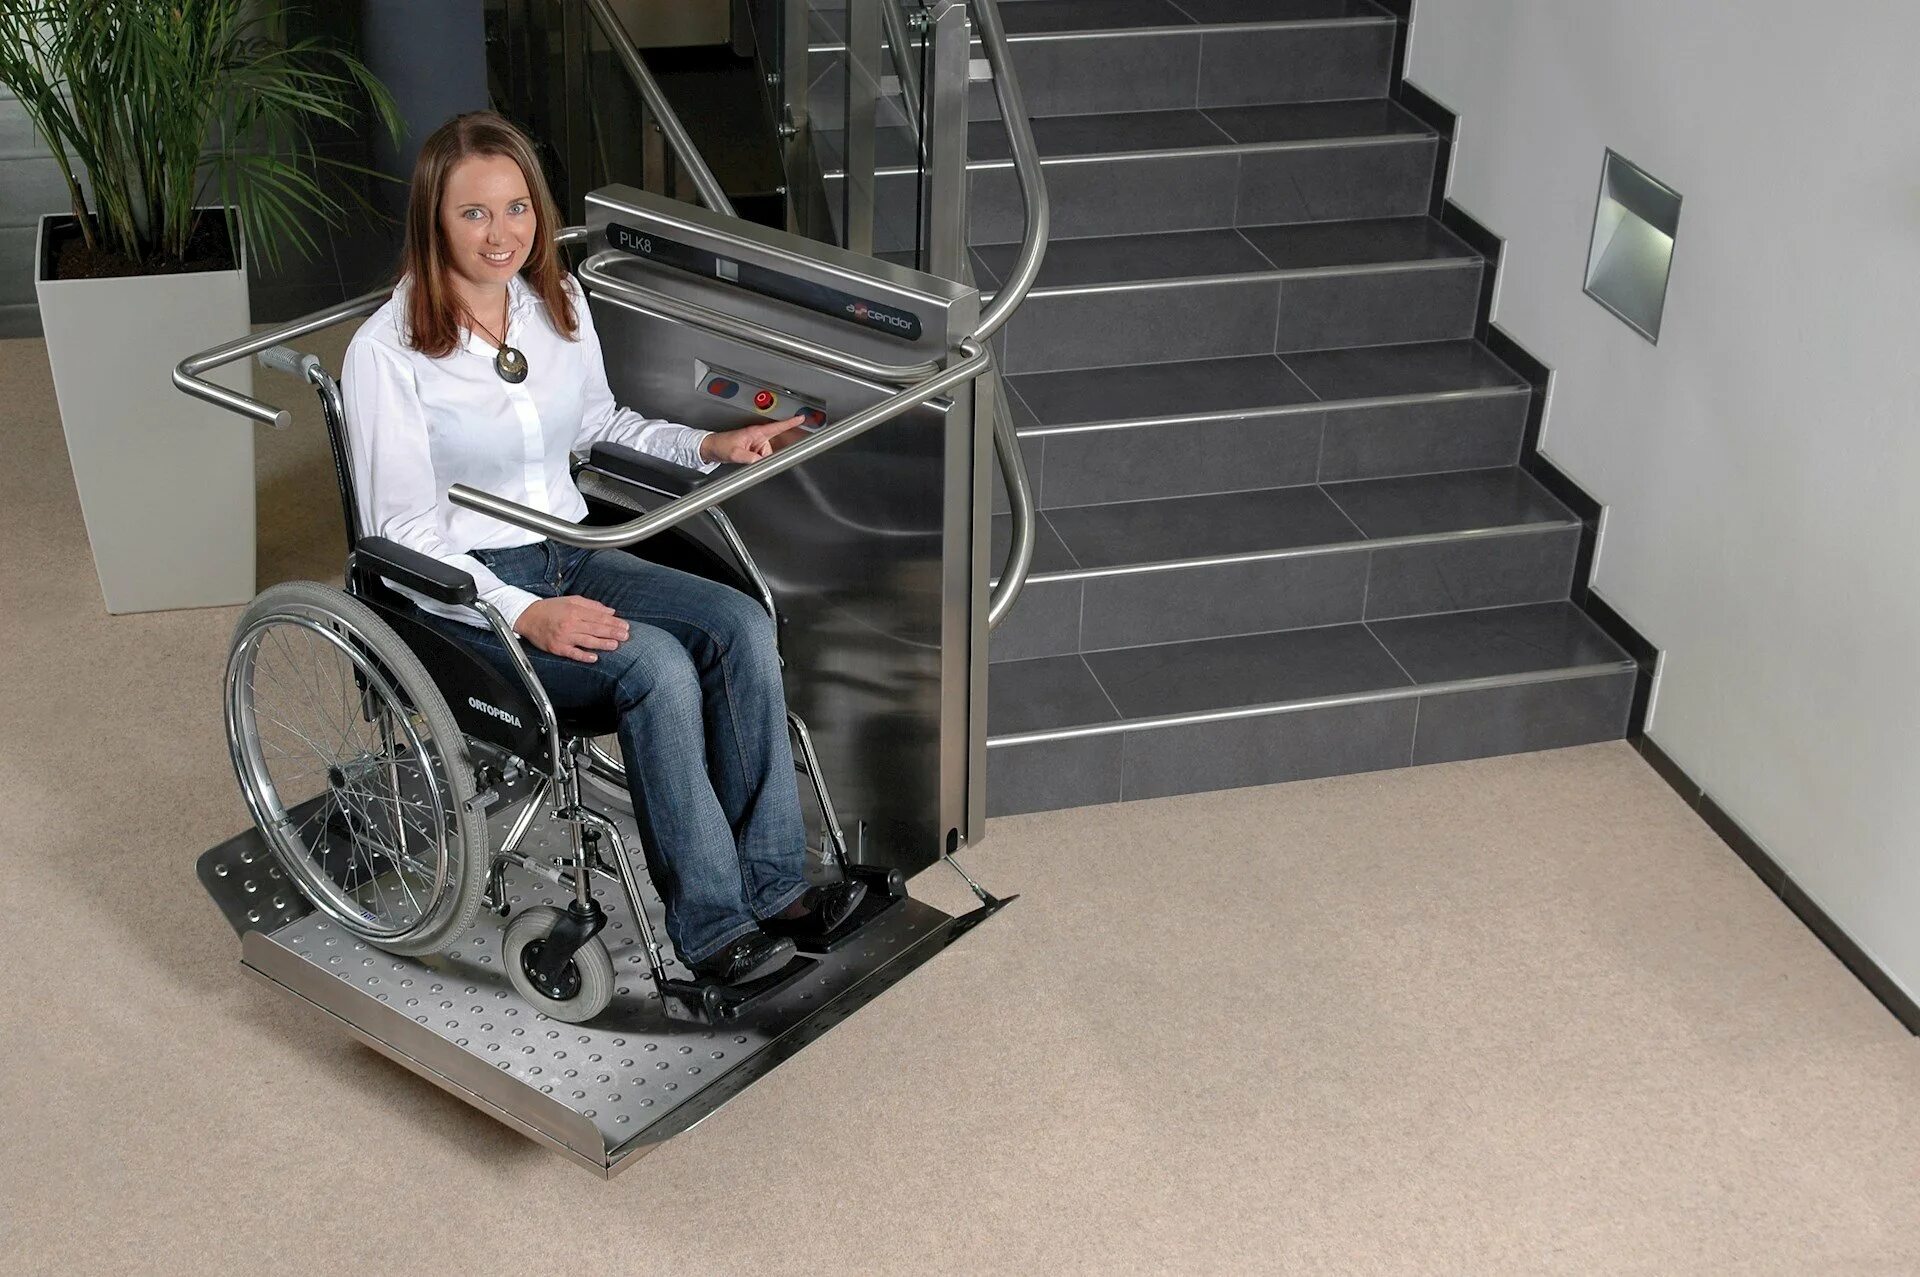 Выезд инвалида. ИНВАПРОМ а310 подъемник для инвалидов. Подъемная платформа БК-320 для инвалидов. Наклонная платформа - подъемник для инвалидов НПУ-001. Вертикальная платформа-подъемник для инвалидов 1100x1250 Veara EASYLIFT.